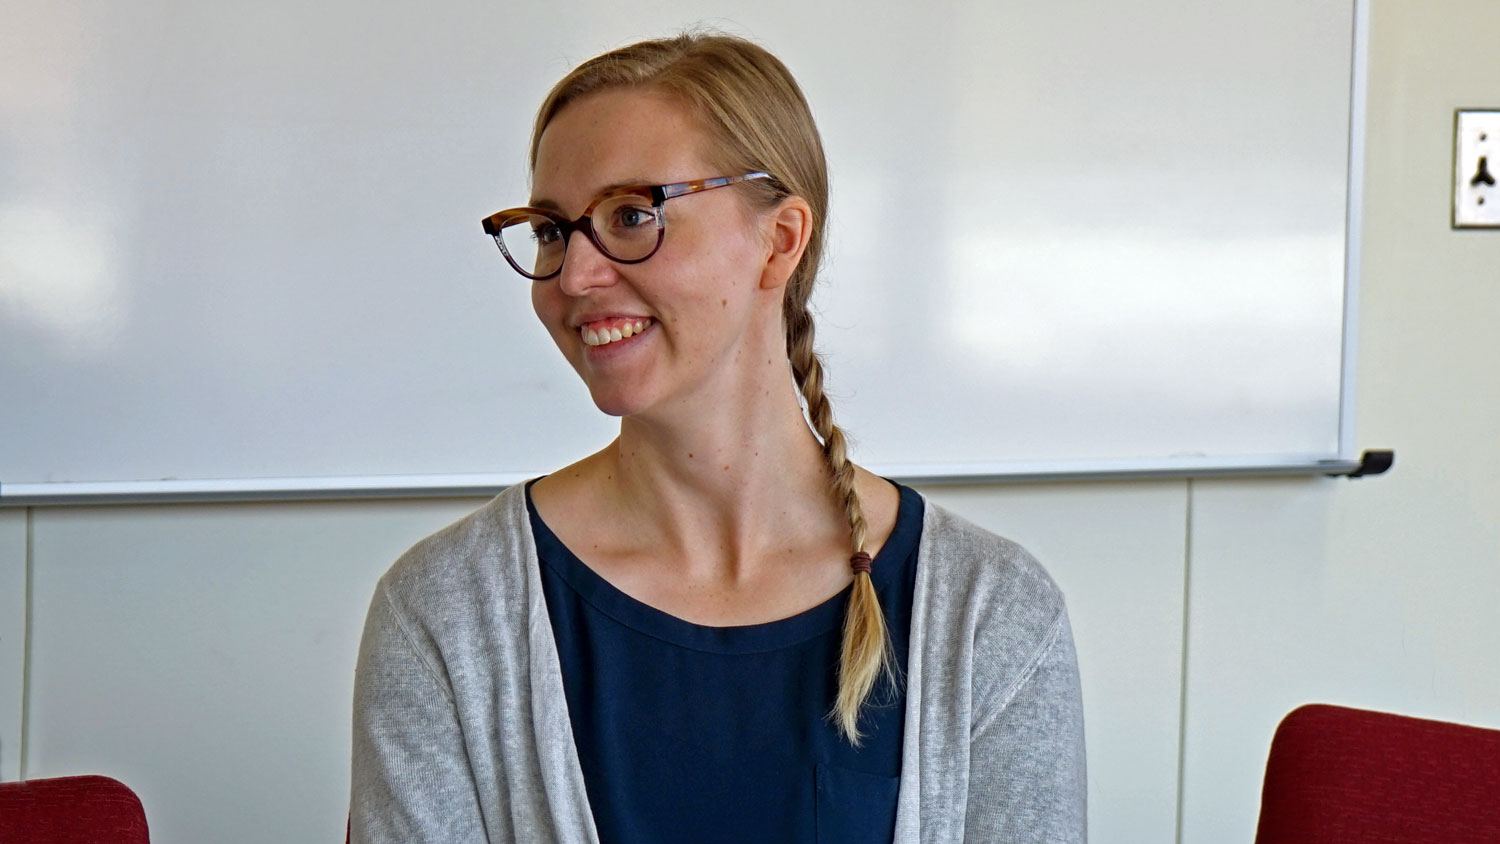 Heidi Vesterinen smiling during a seminar